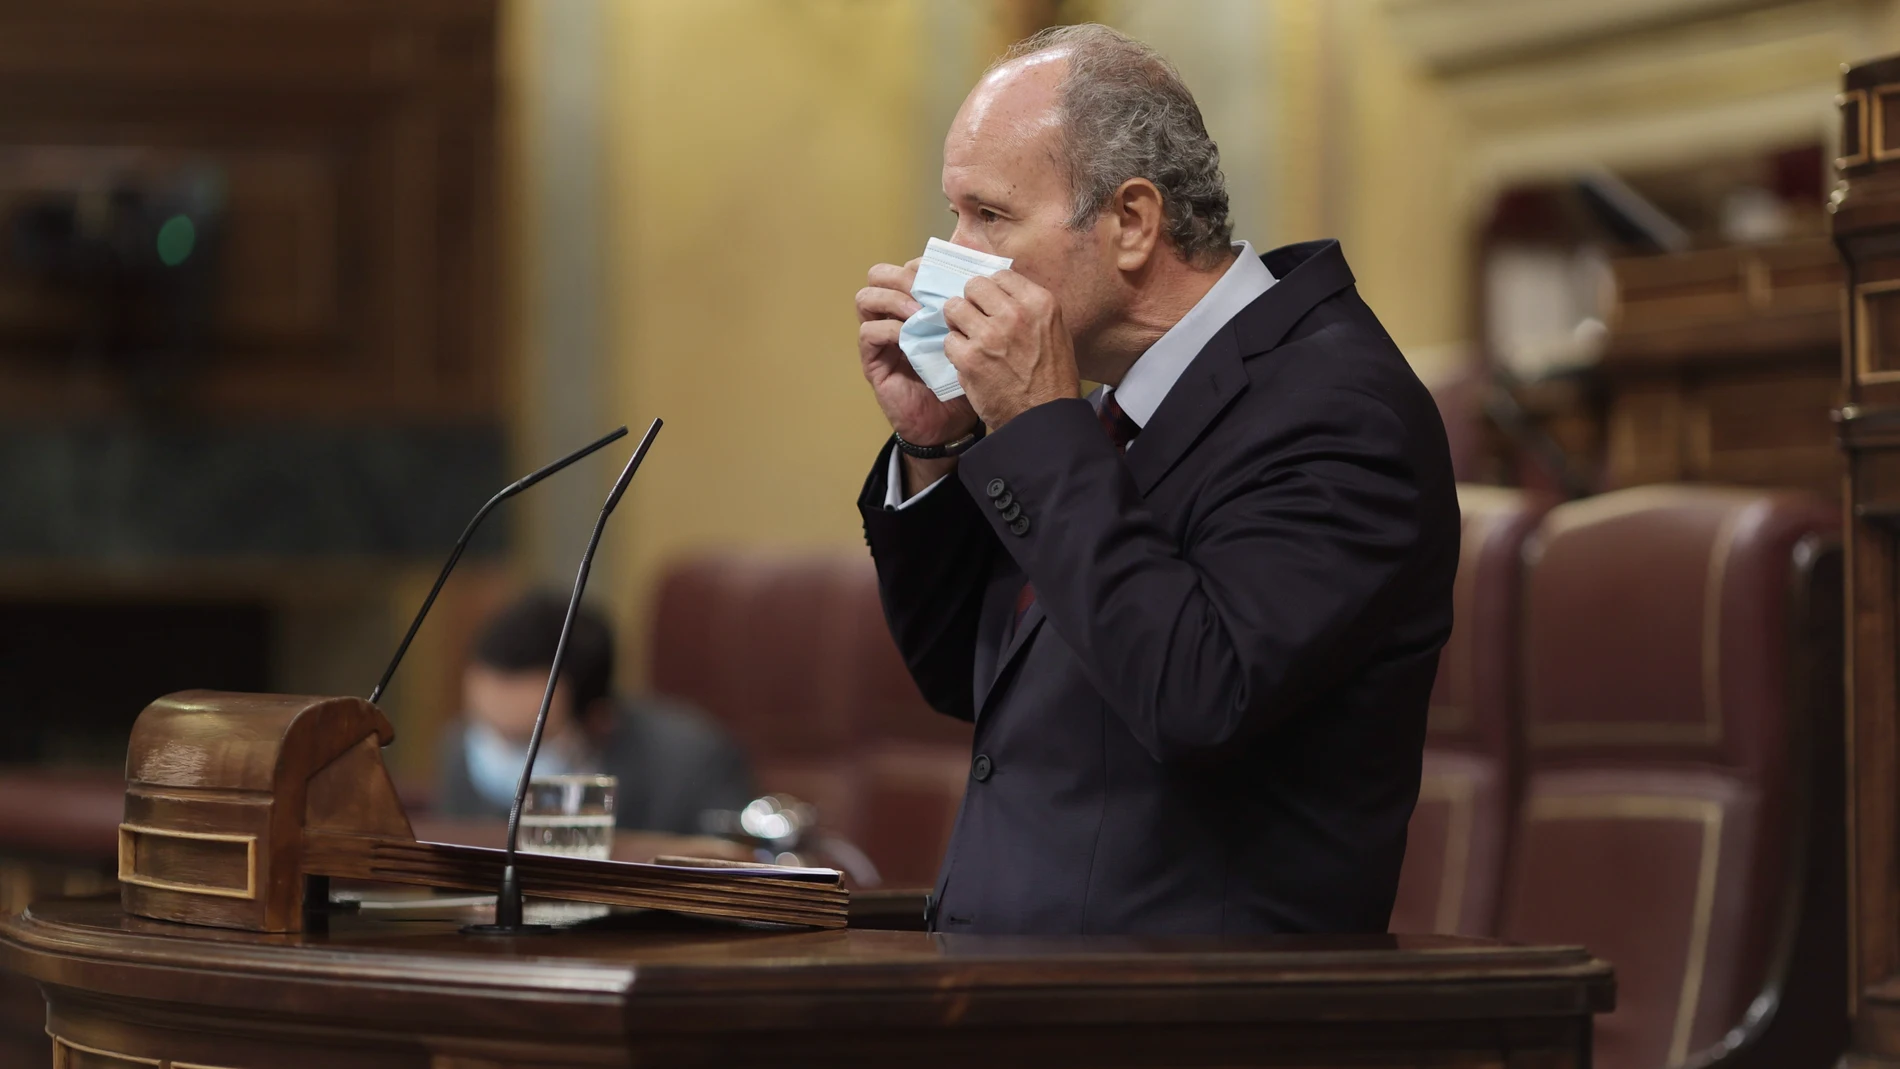 El ministro de Justicia, Juan Carlos Campo, se coloca la mascarilla en una sesión de control al Gobierno, a 16 de junio de 2021.